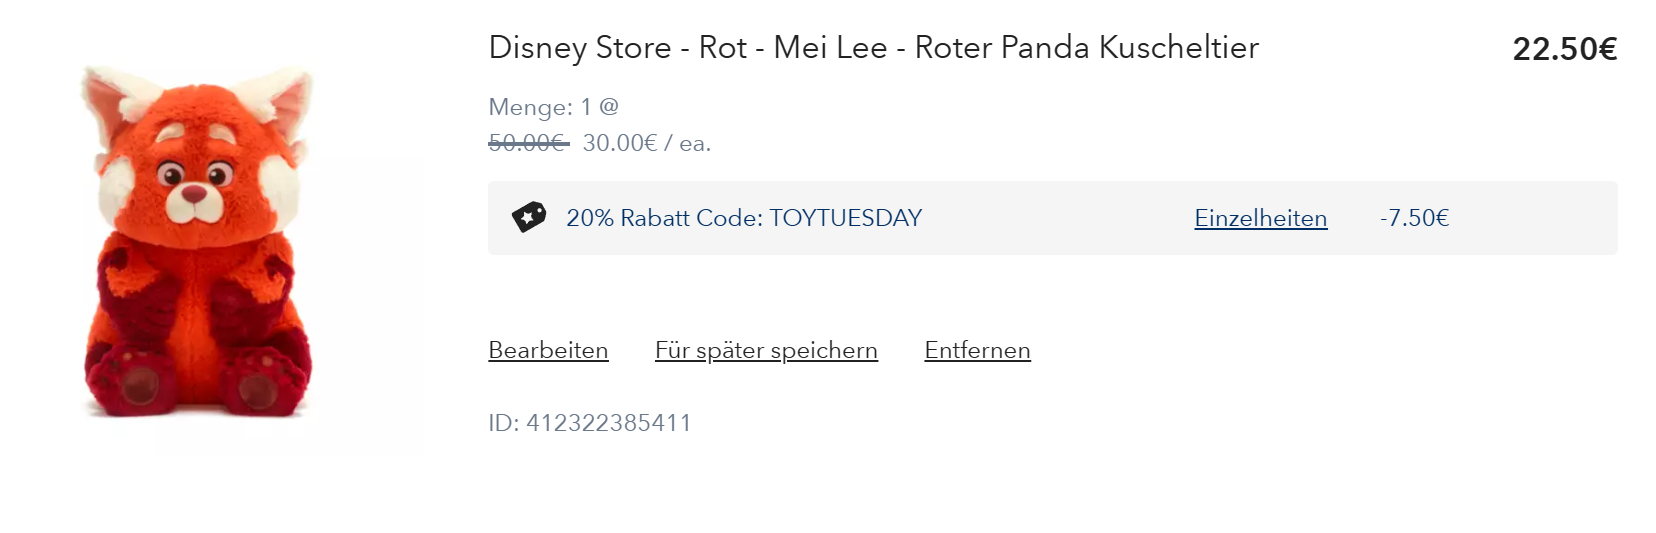 Disney Store - Rot - Mei Lee - Roter Panda Kuscheltier